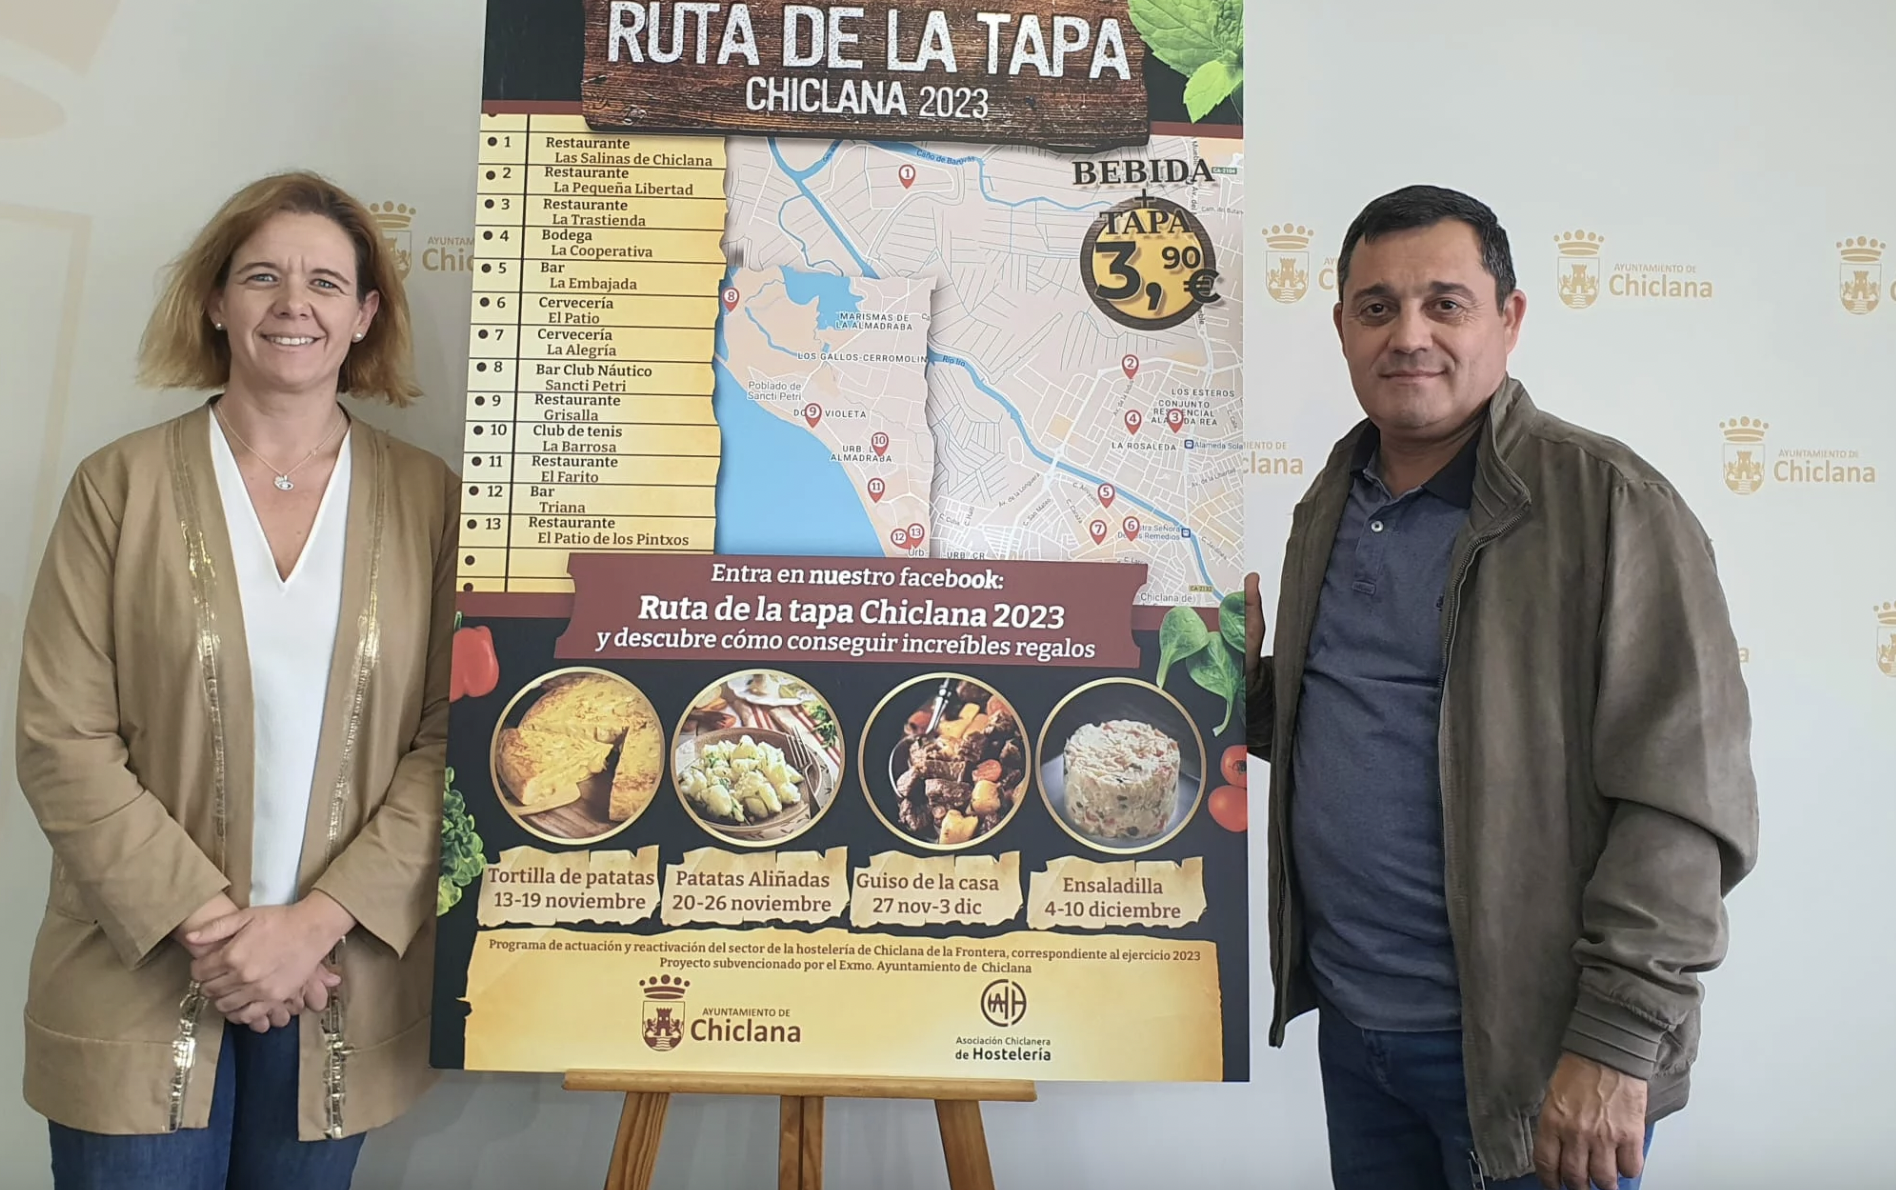 13 bares y restaurantes participan en la 'Ruta de la Tapa Chiclana 2023'. La delegada y el presidente de los hosteleros junto al cartel de la ruta.